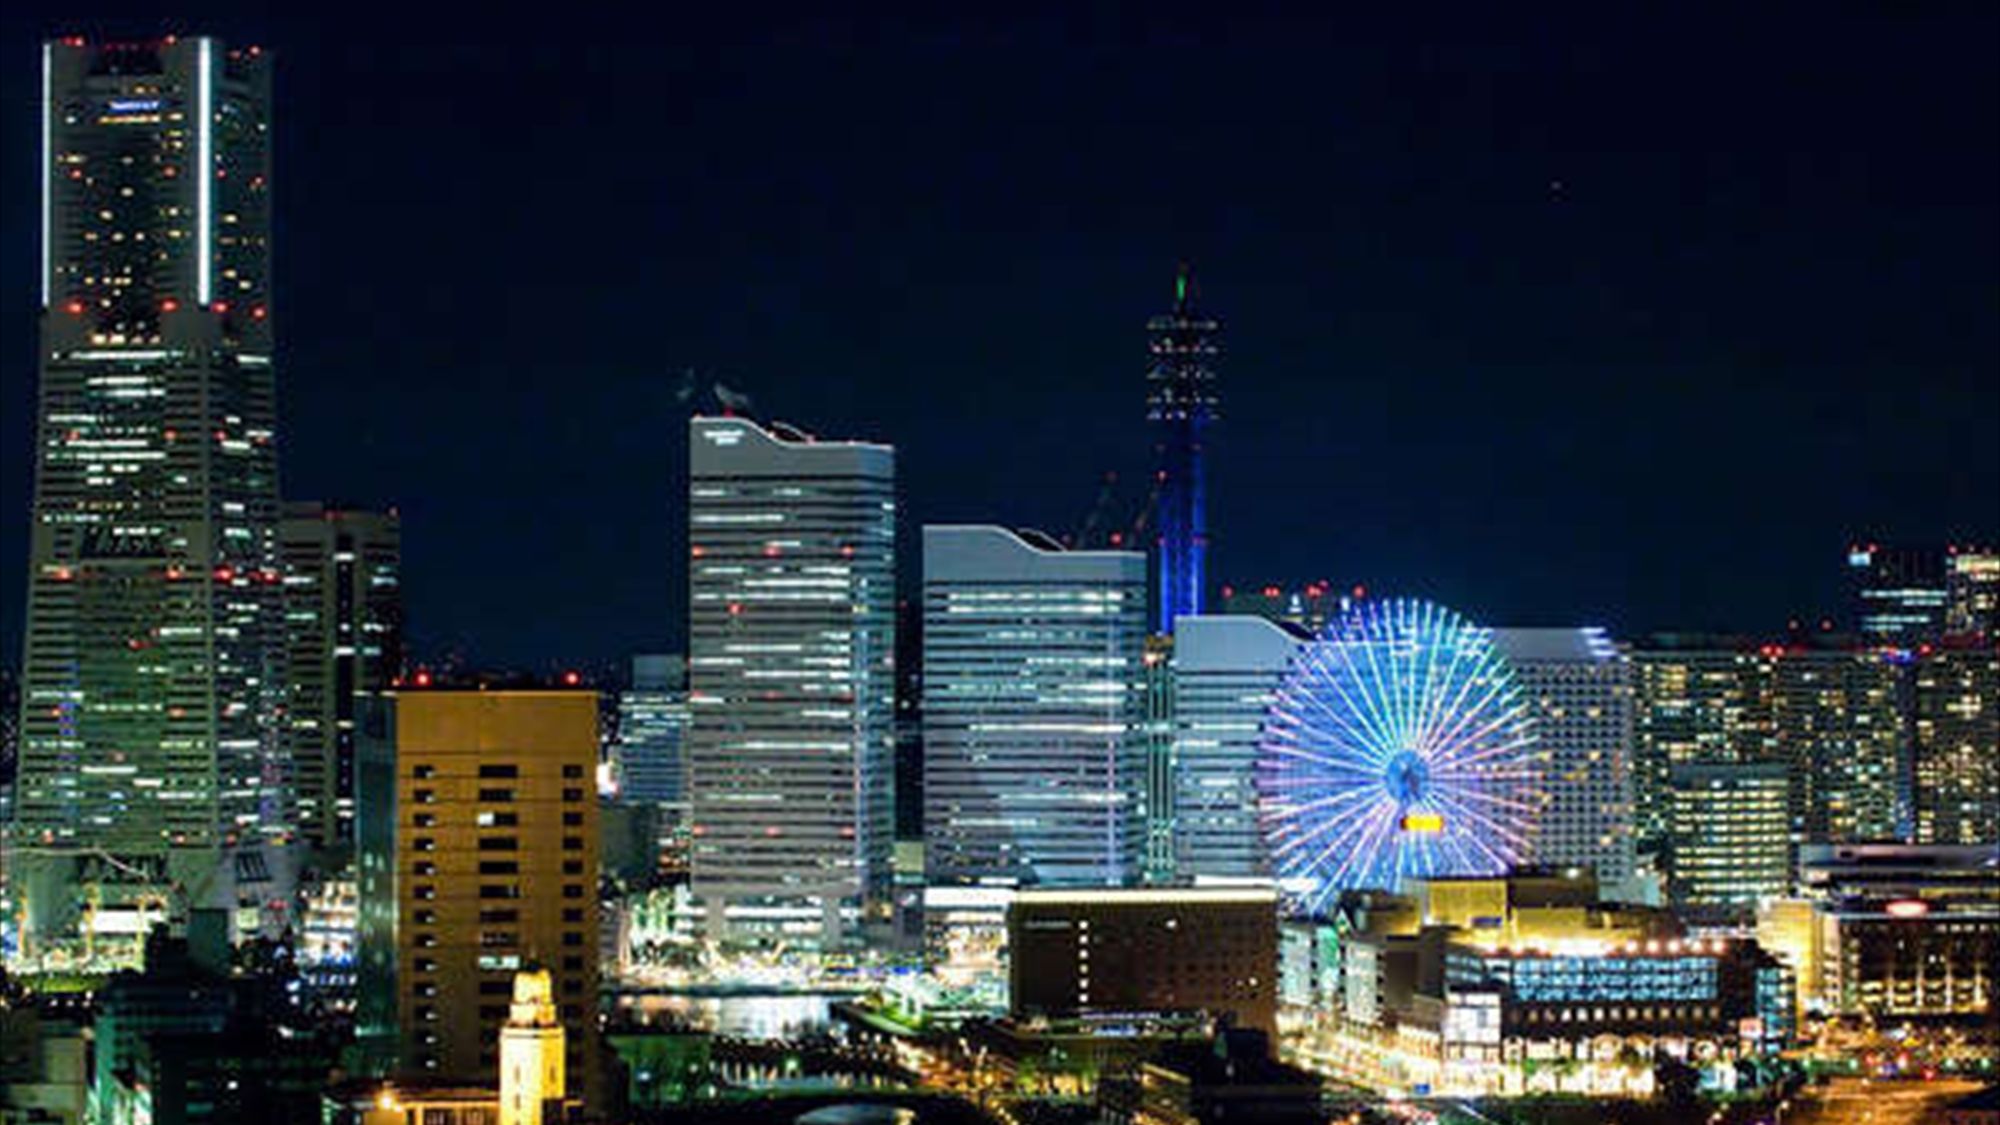 ホテルプラム ｈｏｔｅｌ ｐｌｕｍｍ 横浜 写真 動画 楽天トラベル